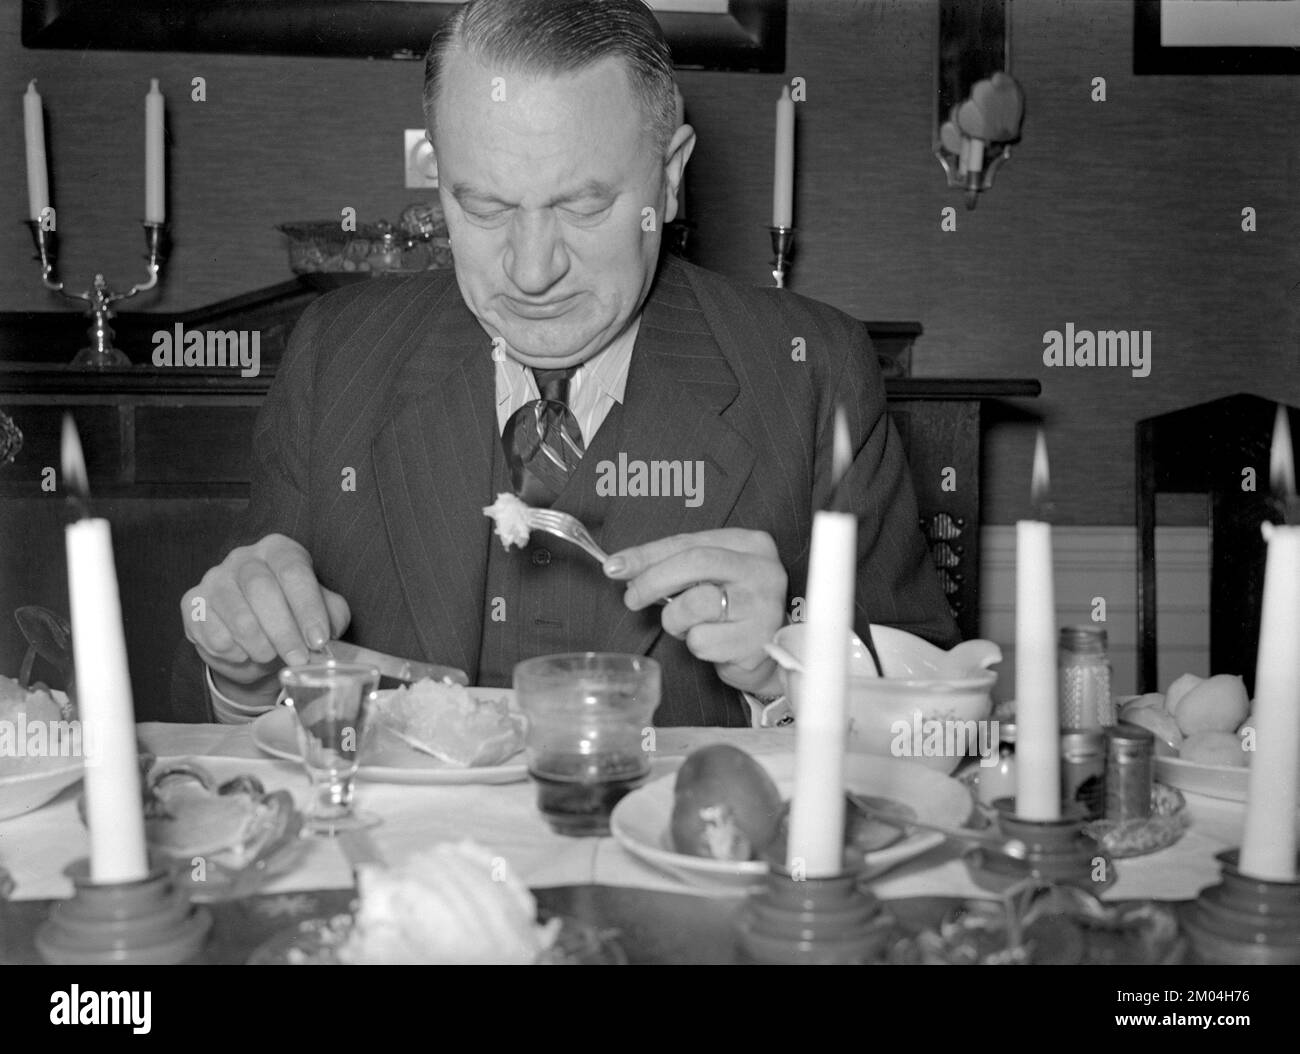 À noël en 1940s. Un homme a le dîner de noël et par le regard de son visage le plat n'est pas dans son goût. Suède décembre 1940 Kristoffersson 42-8 Banque D'Images